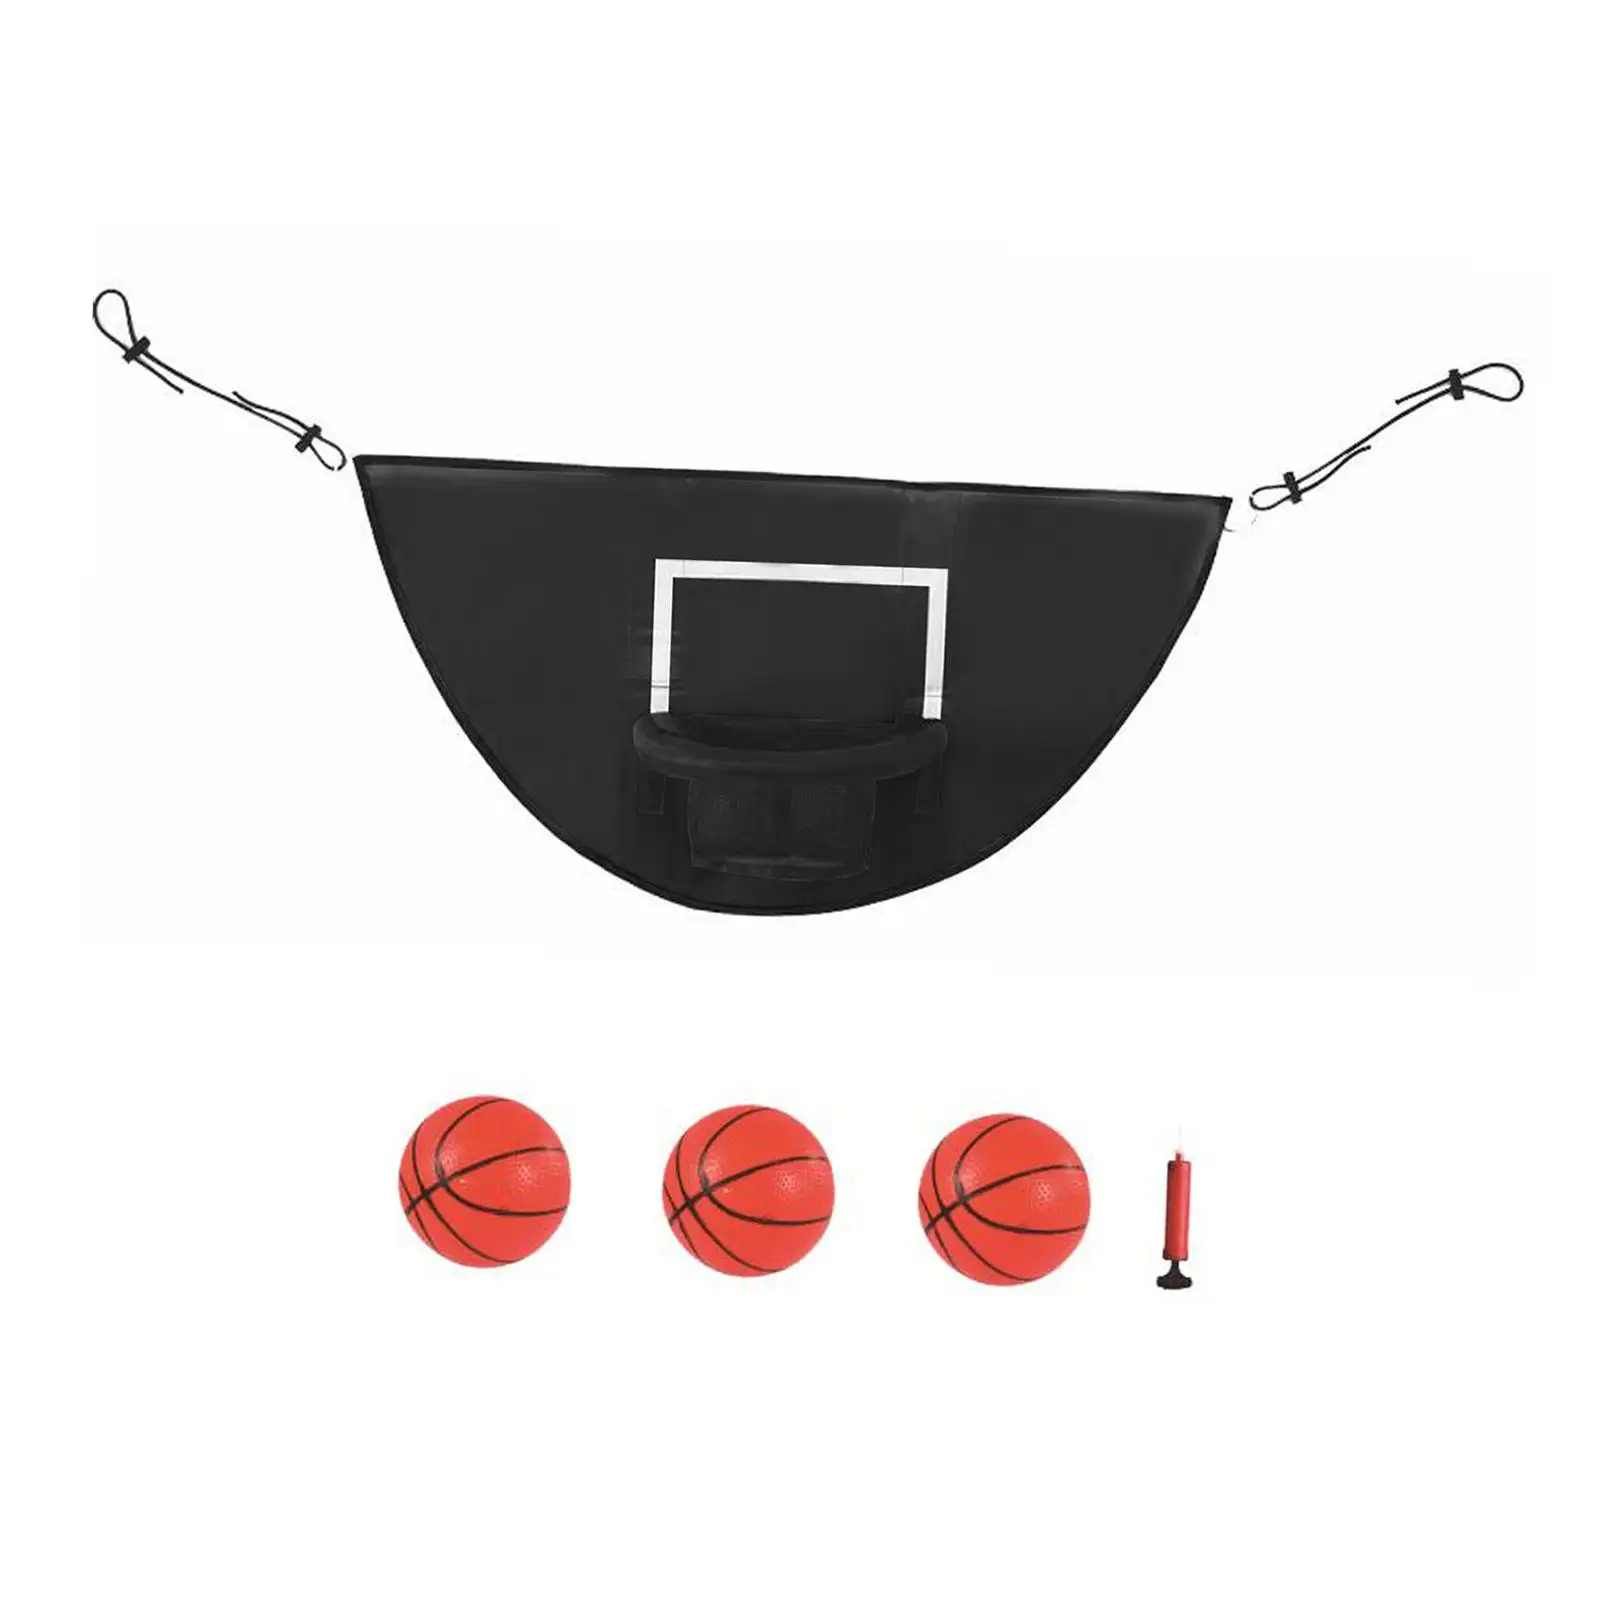 Mini Basketball Hoop for Trampoline Breakaway Rim for Safe Dunking Easy to Install Basketball Frame Trampoline Basketball Goal